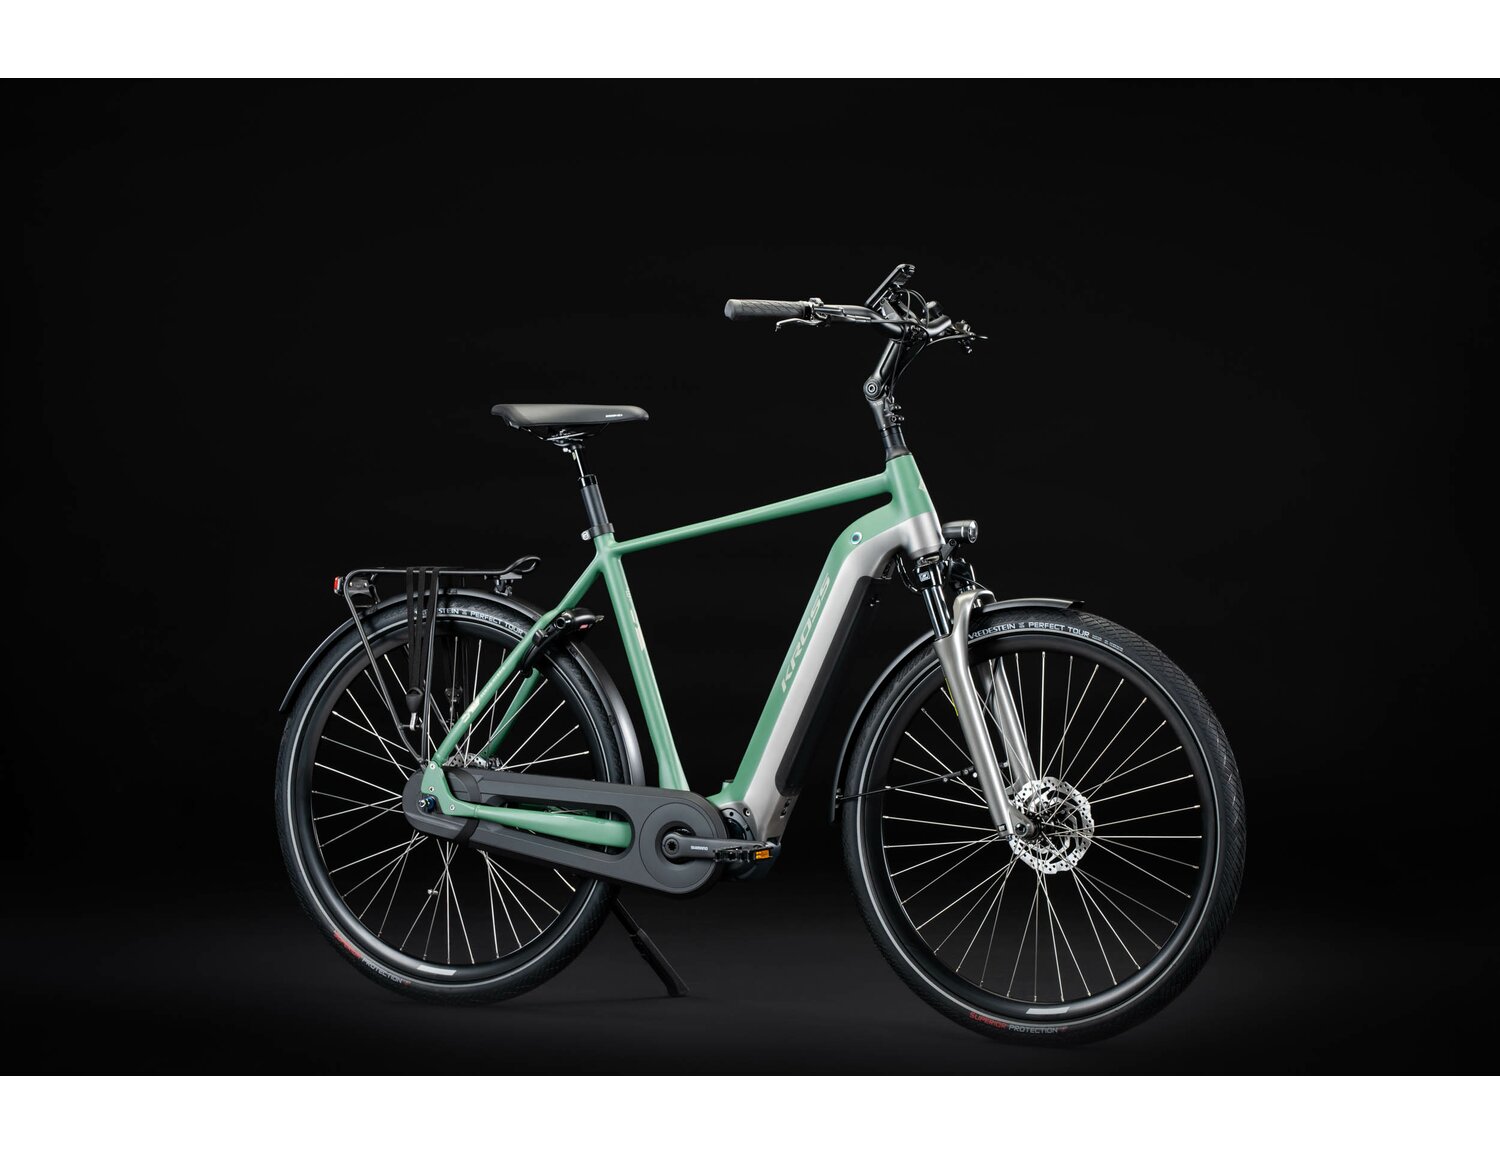  Elektryczny rower miejski Ebike City KROSS Sentio Hybrid 6.0 500 Wh na aluminiowej ramie w kolorze zielonym wyposażony w osprzęt shimano i napęd elektryczny Shimano